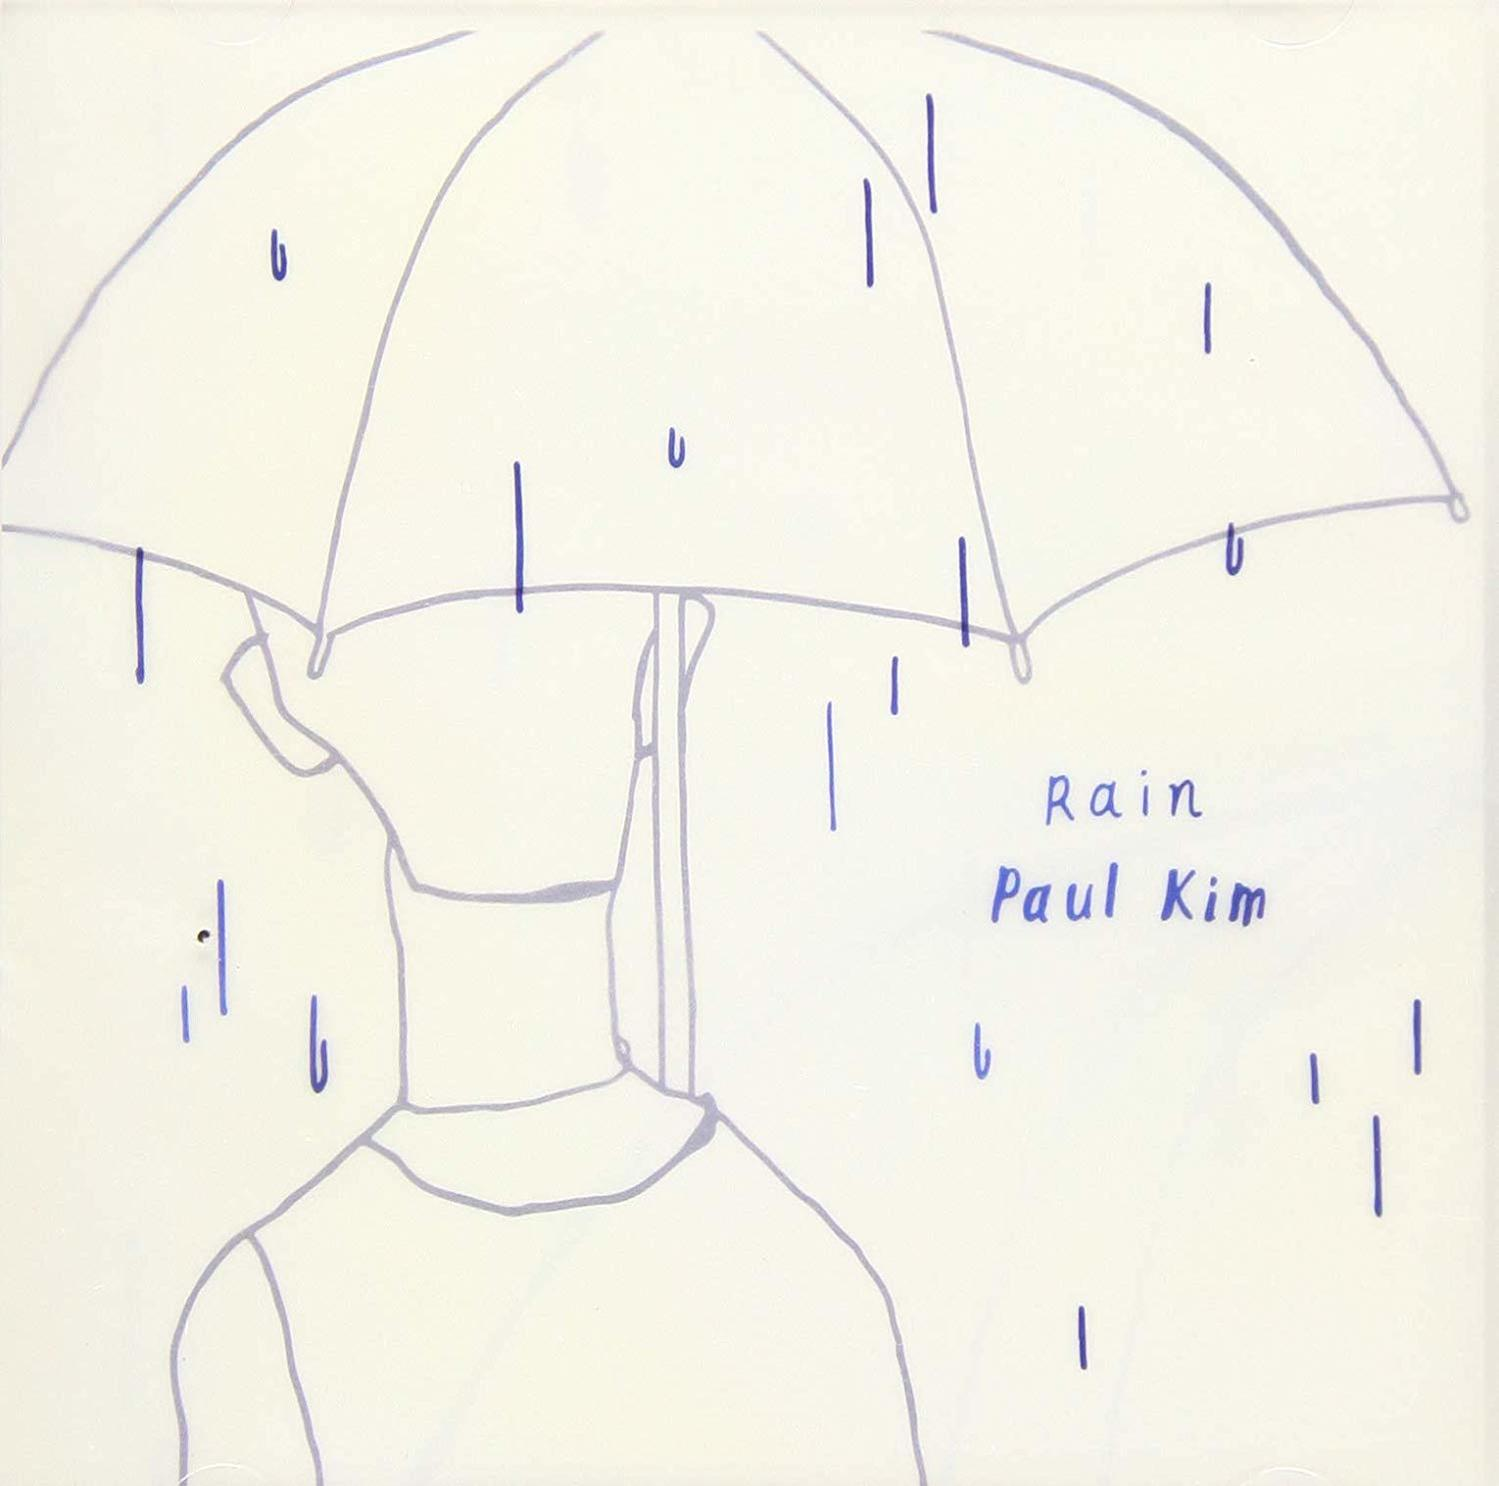 Paul Kim (Vinyl) - - Rain